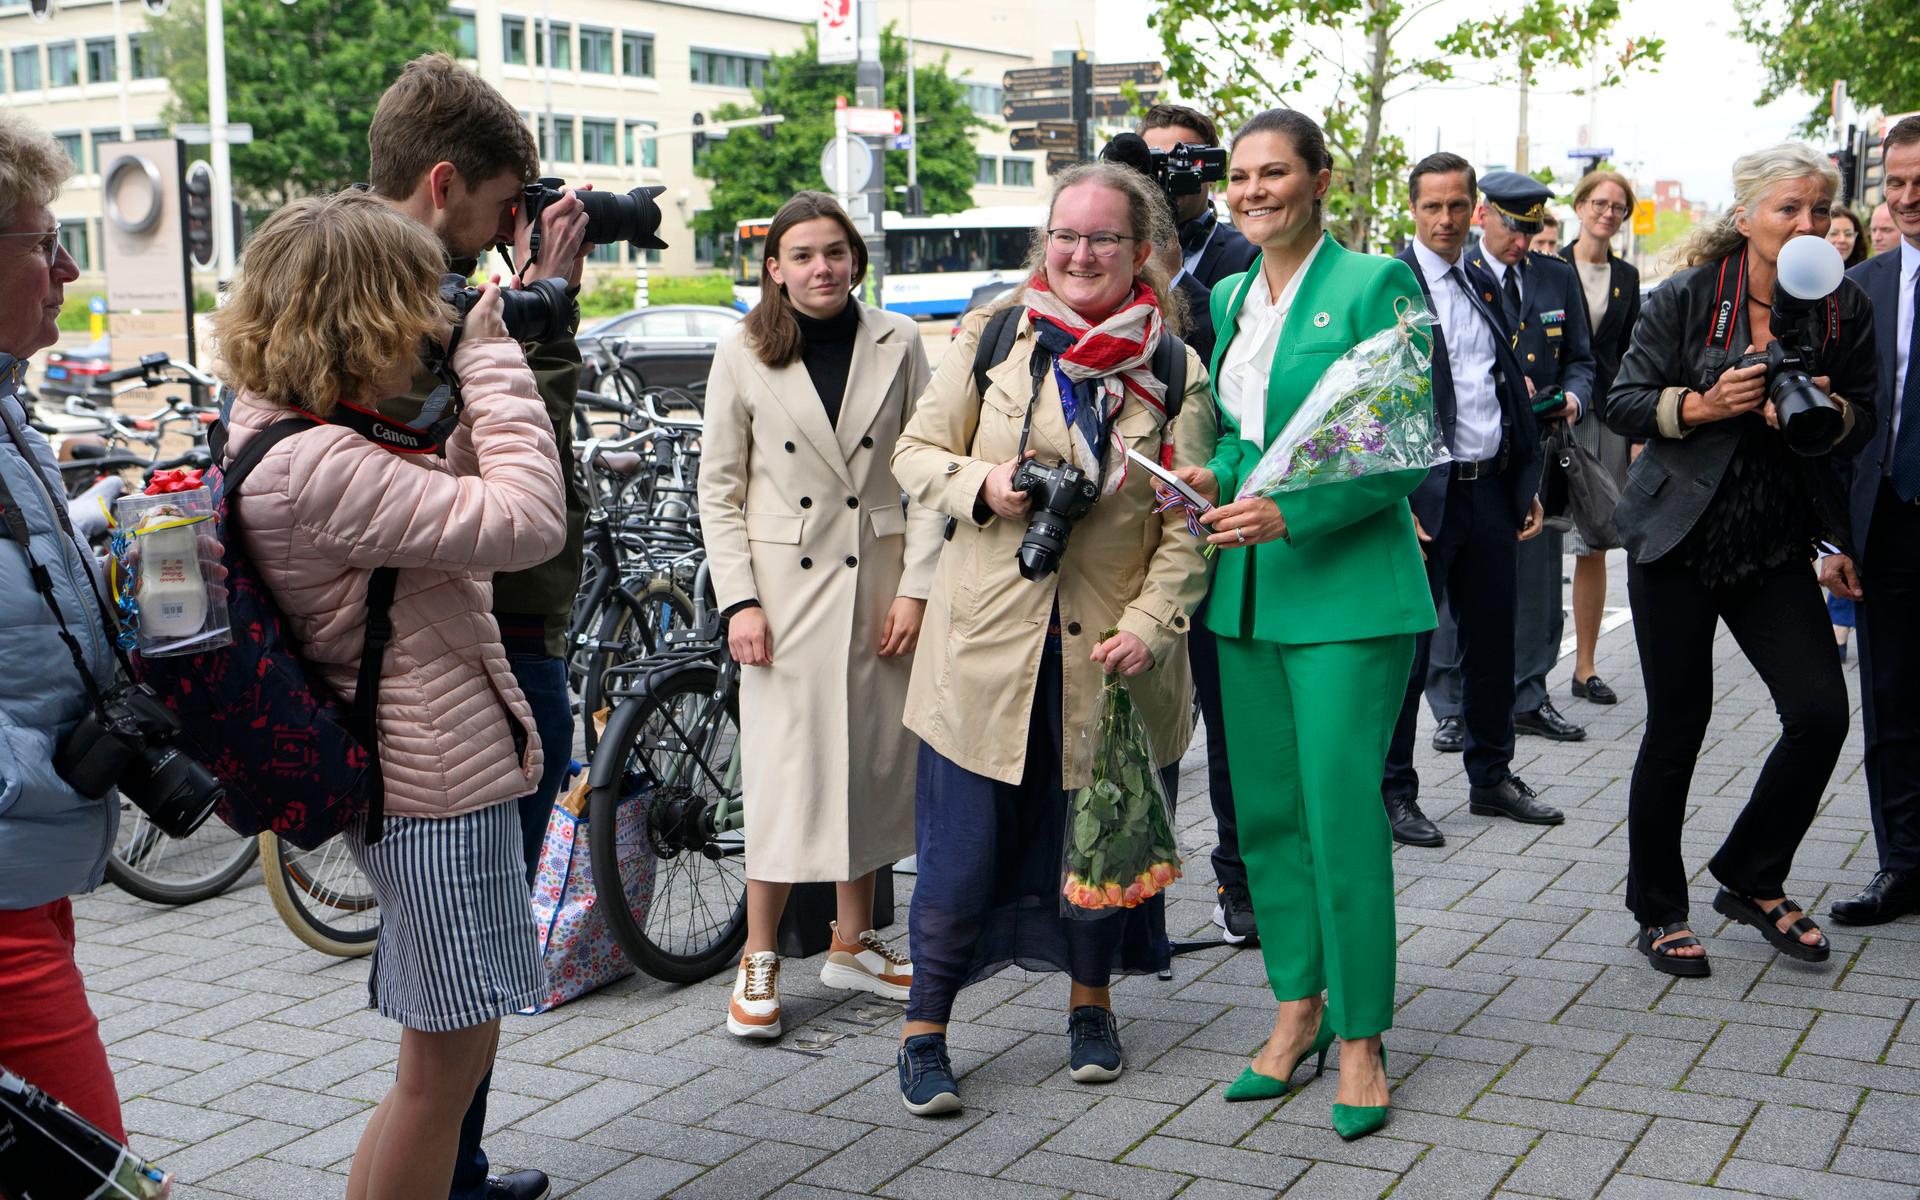 När kronprinsessan var i Amsterdam i juni träffade hon fans som gav hennes blommor och tog bilder tillsammans med henne.